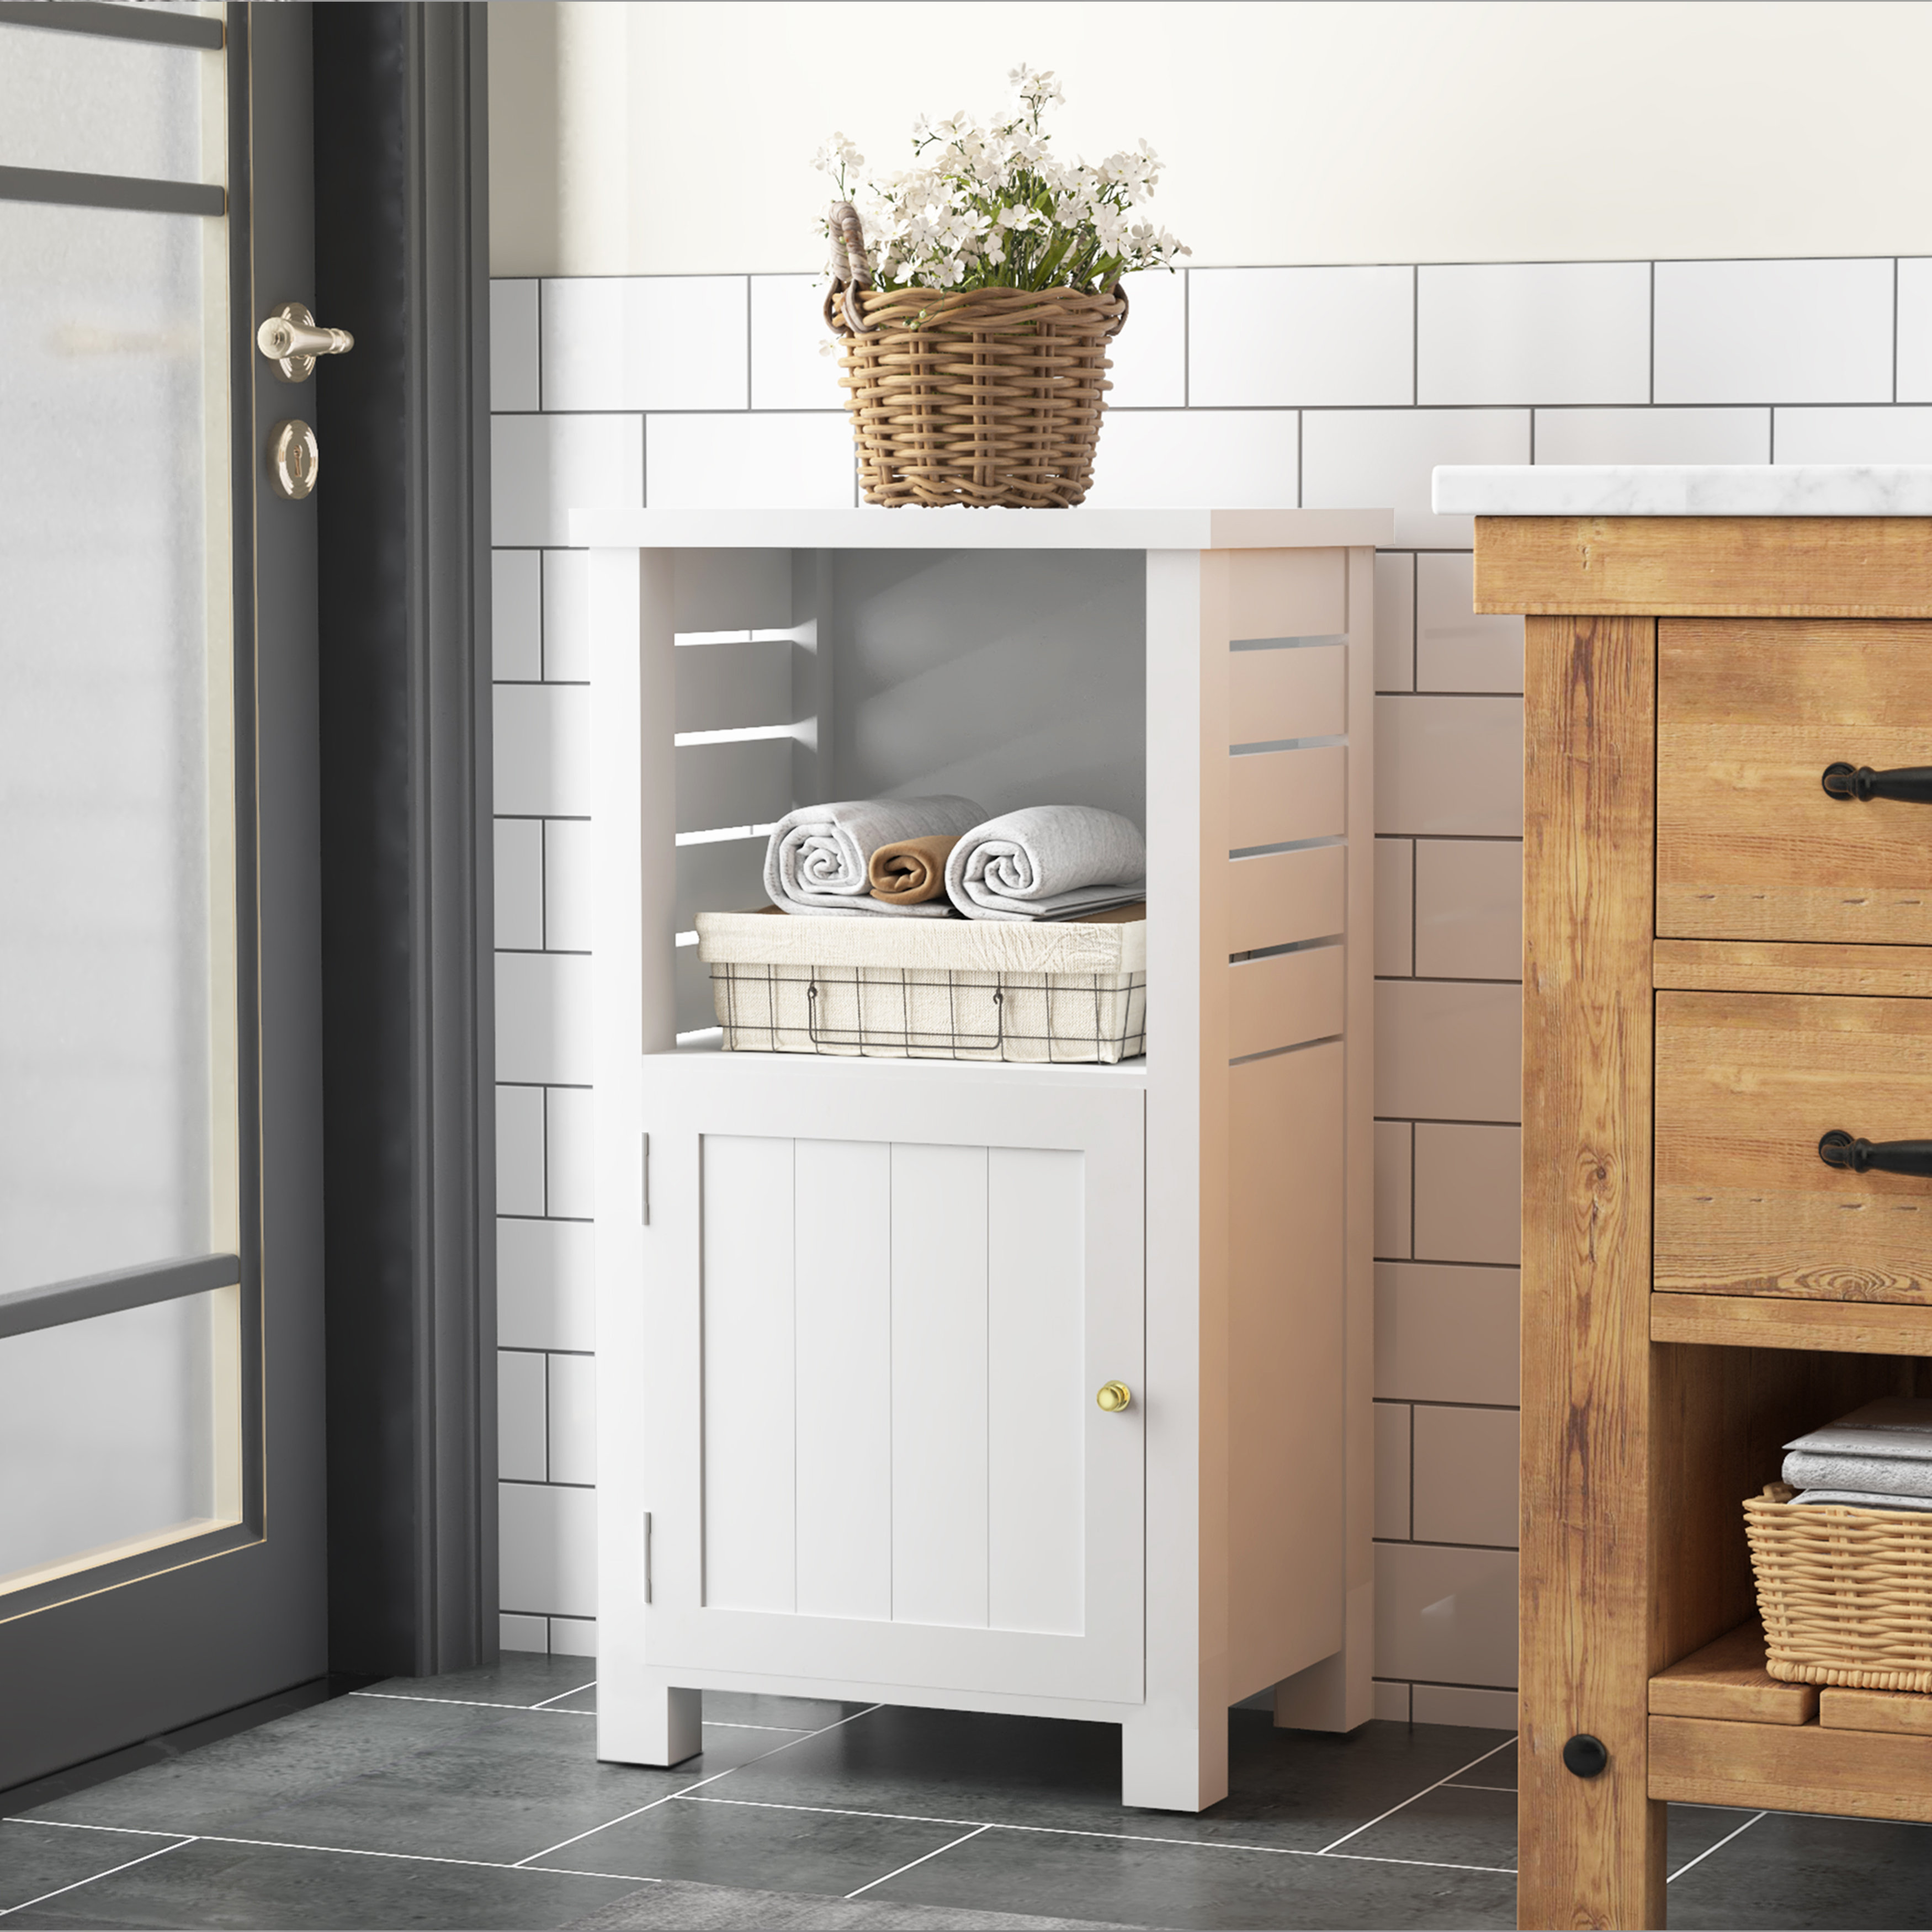 https://assets.wfcdn.com/im/32806888/compr-r85/2511/251182027/colgin-solid-wood-freestanding-bathroom-cabinet.jpg